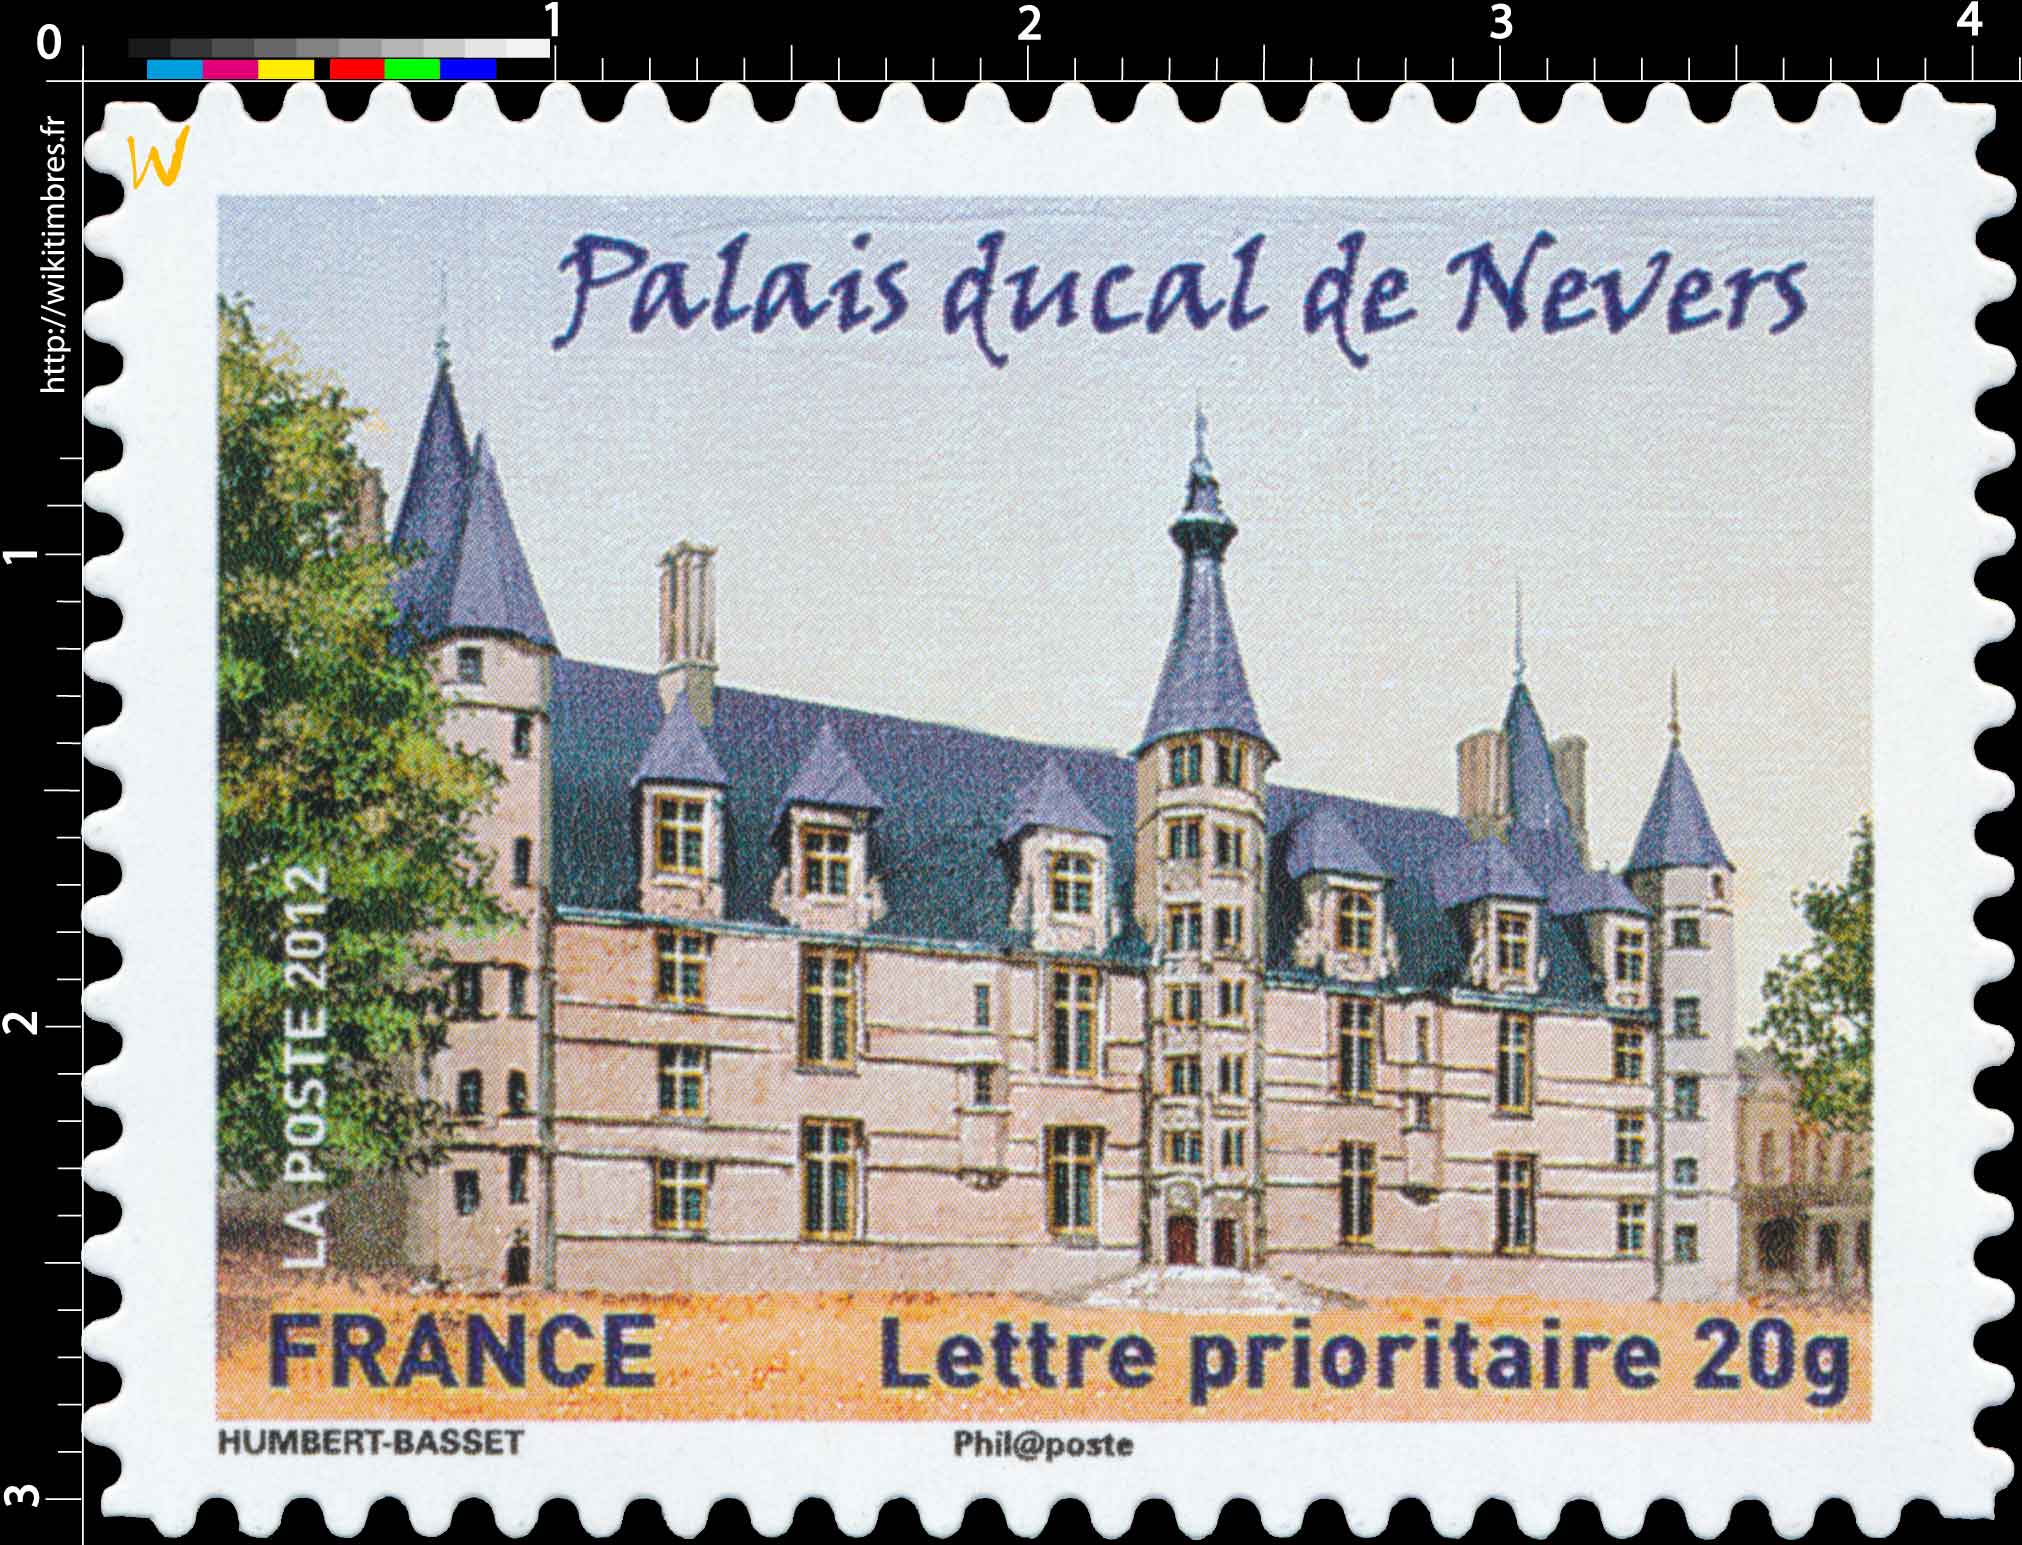 2012 Palais ducal de Nevers